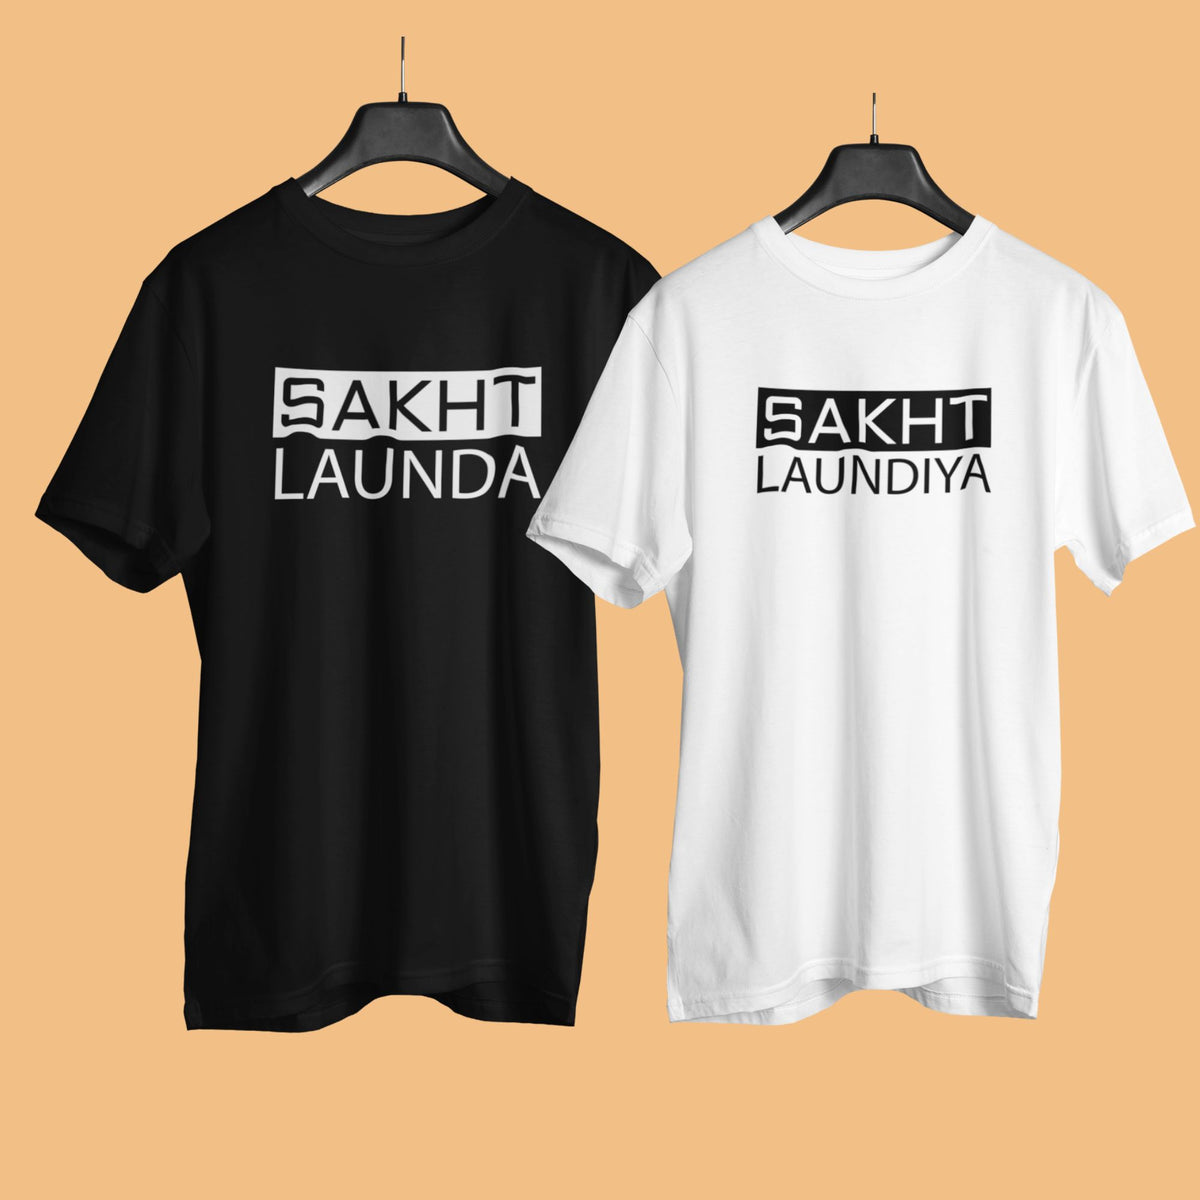 sakht-launda-sakth-laundiya-black-and-white-cotton-printed-couple-t-shirt